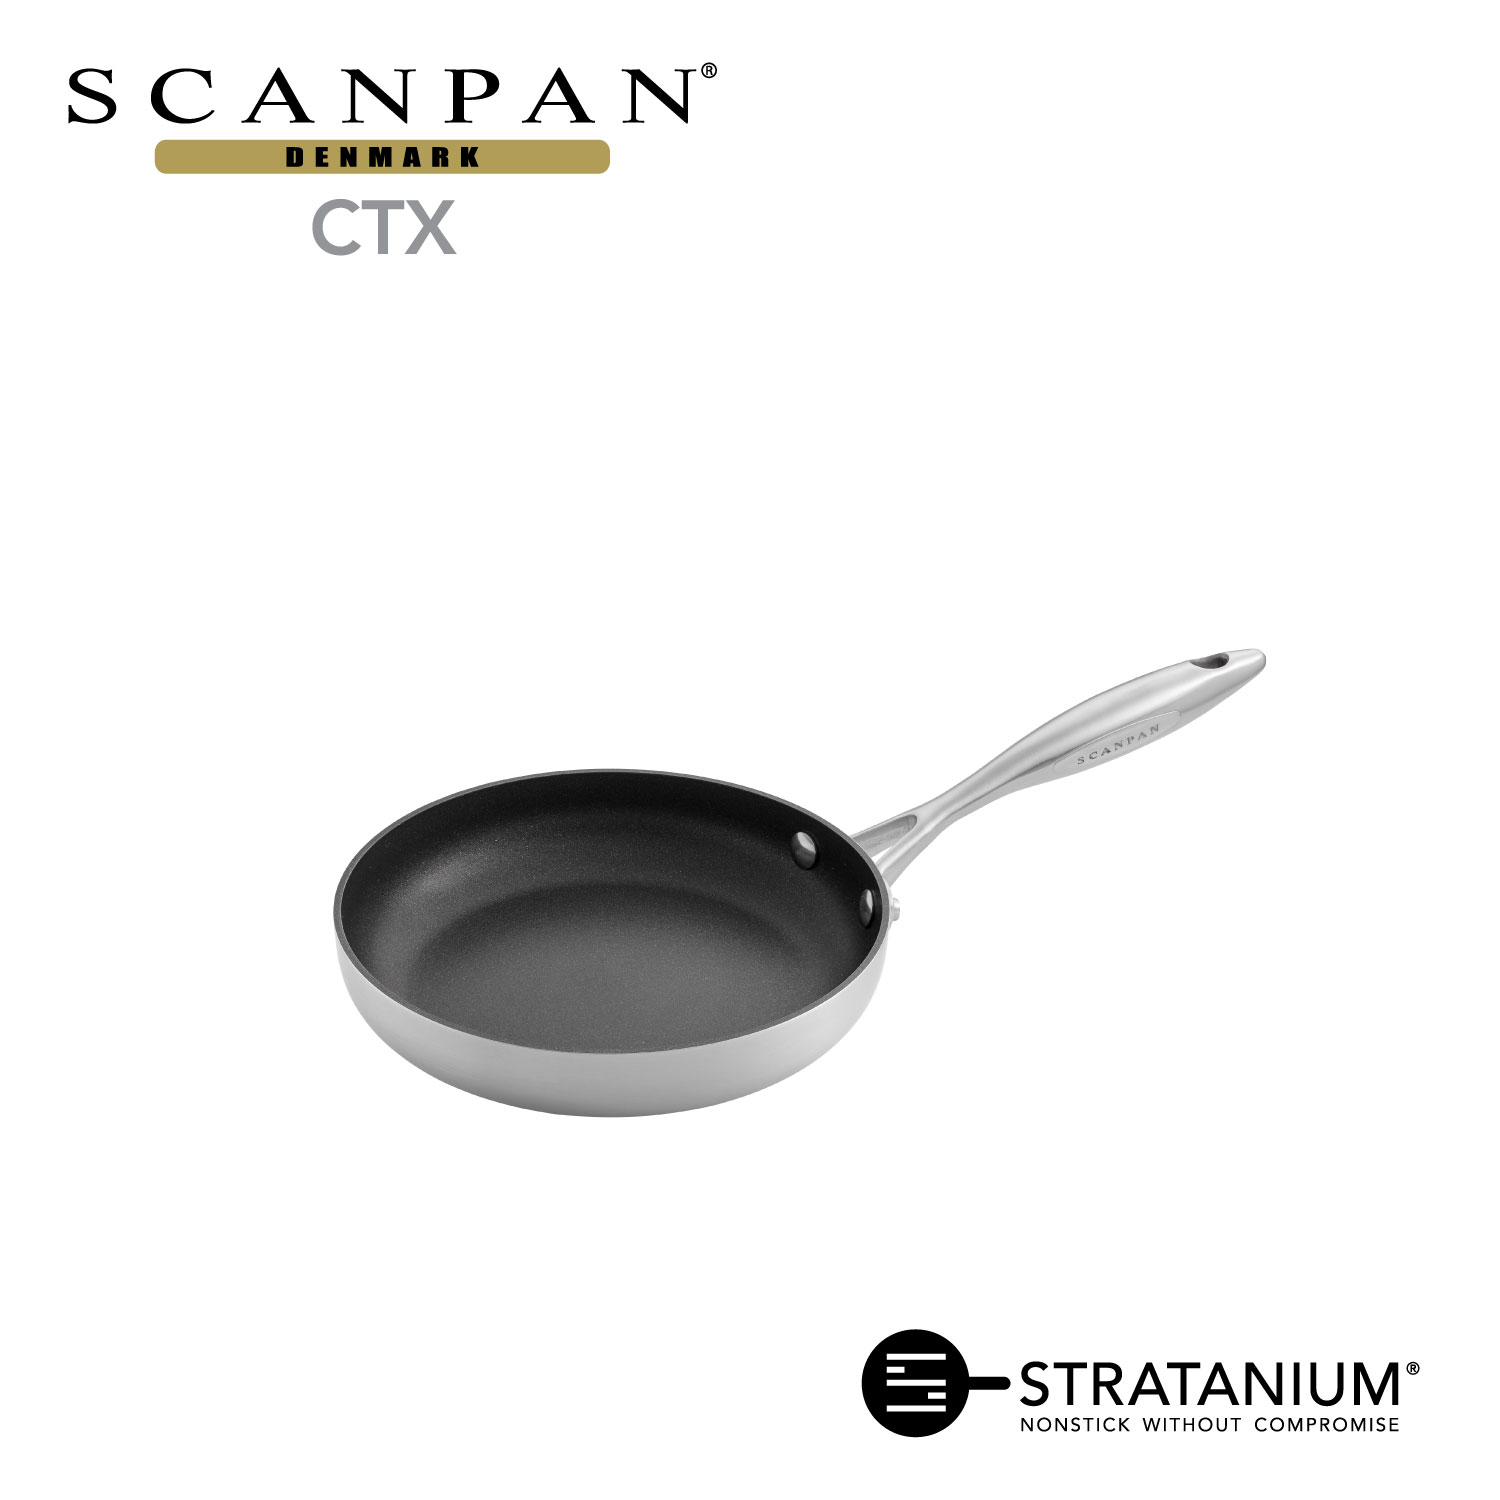 【メーカー公式】スキャンパン CTXシリーズ フライパン 20cm IH対応 SCANPAN 20センチ ih ステンレス アルミ 浅型 オーブン対応 pfoaフリー 安全なフライパン STRATANIUM